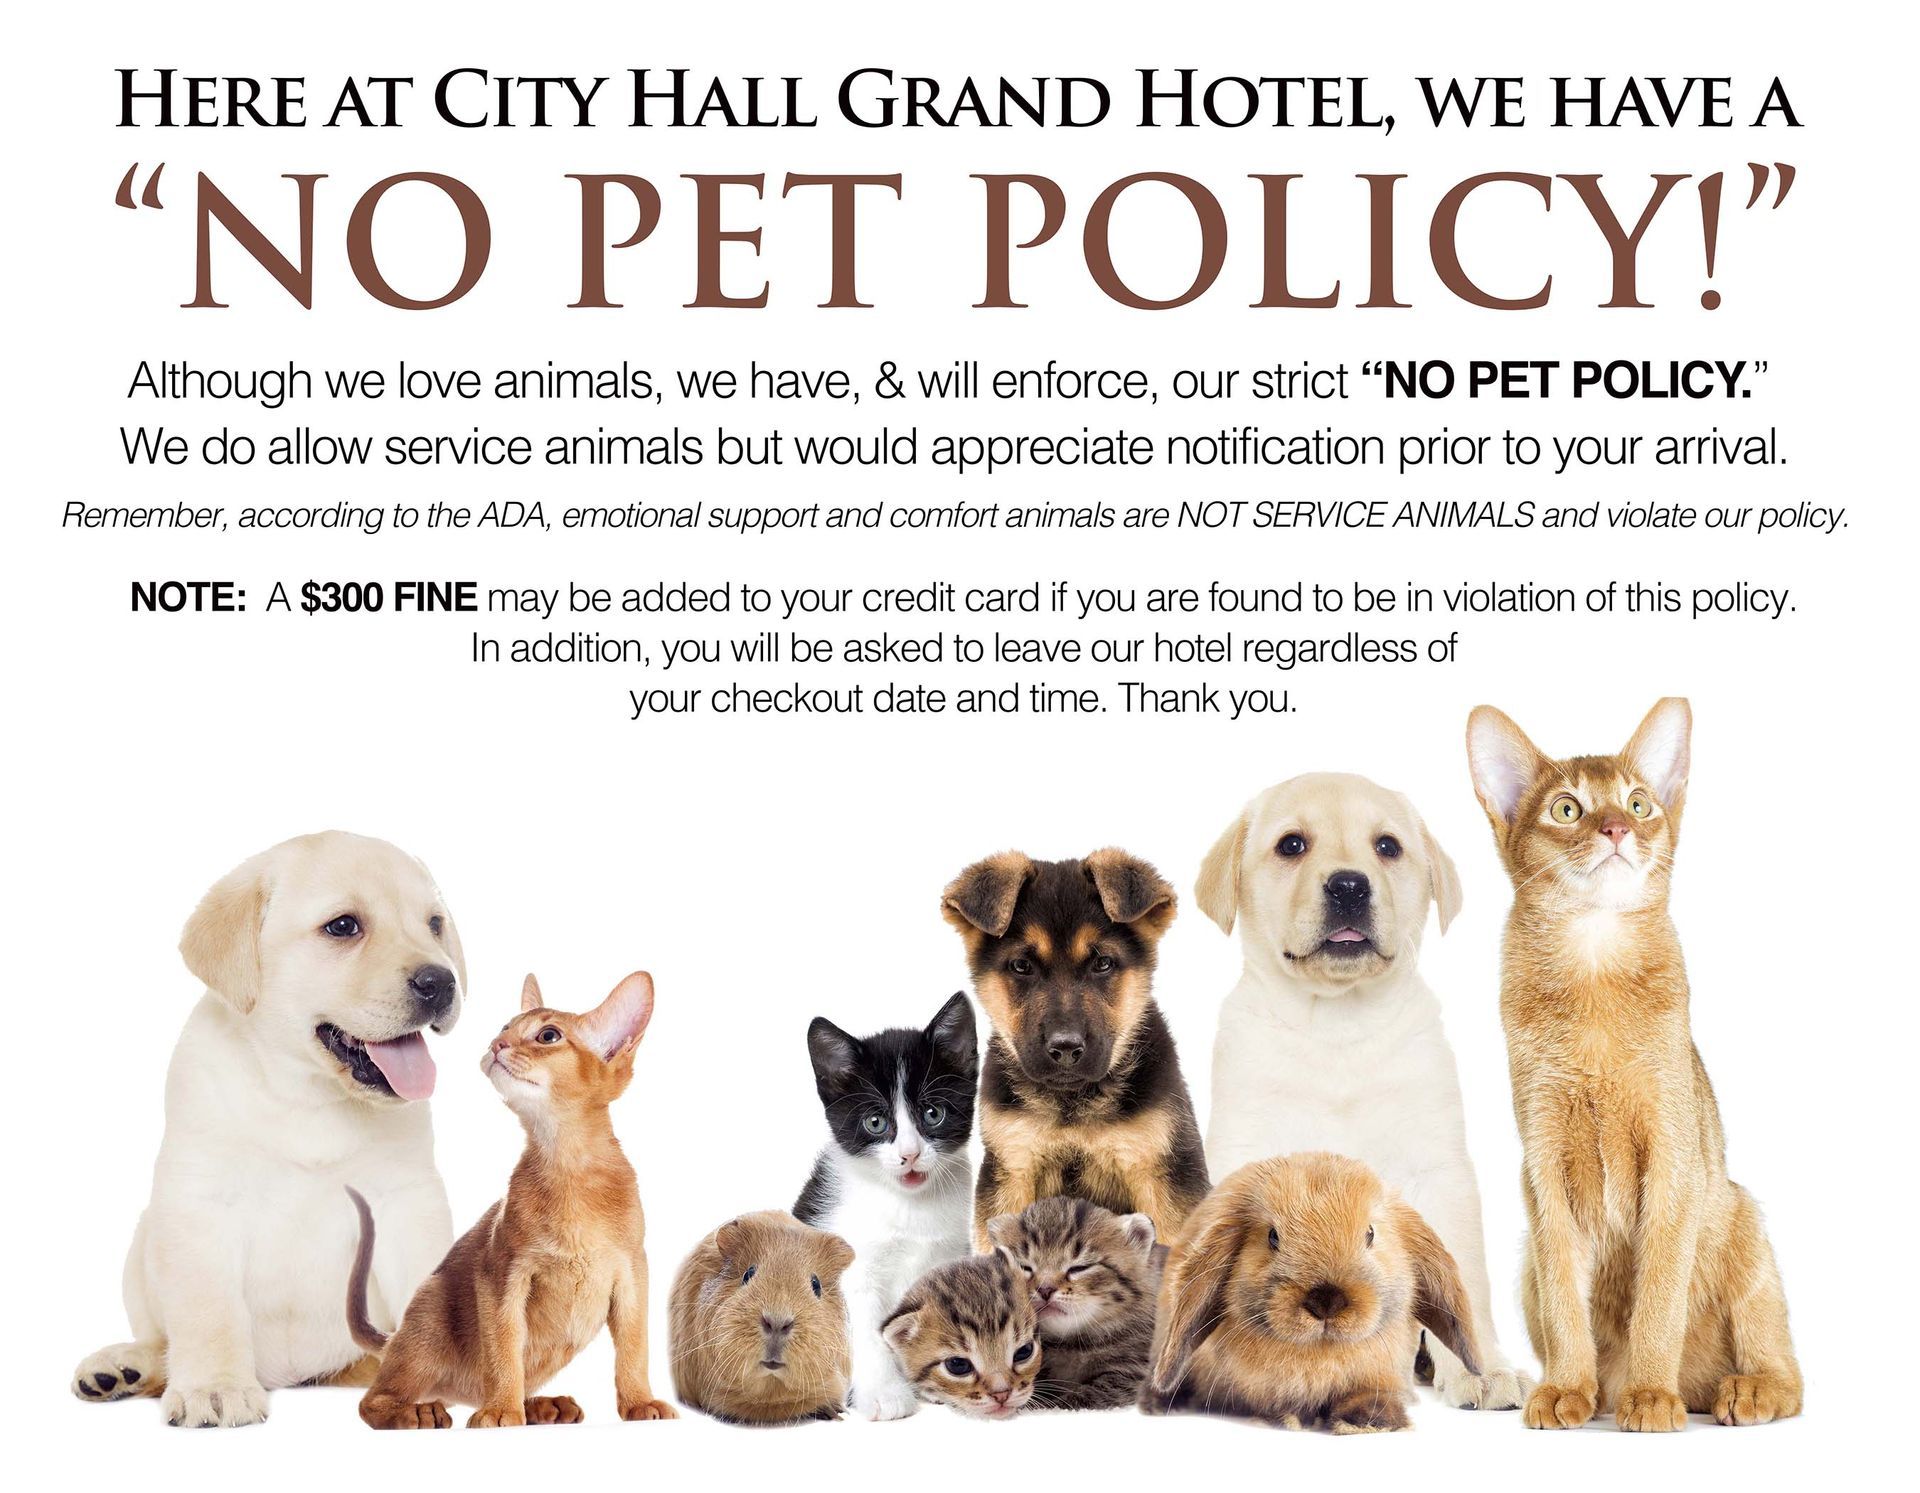 No pet policy